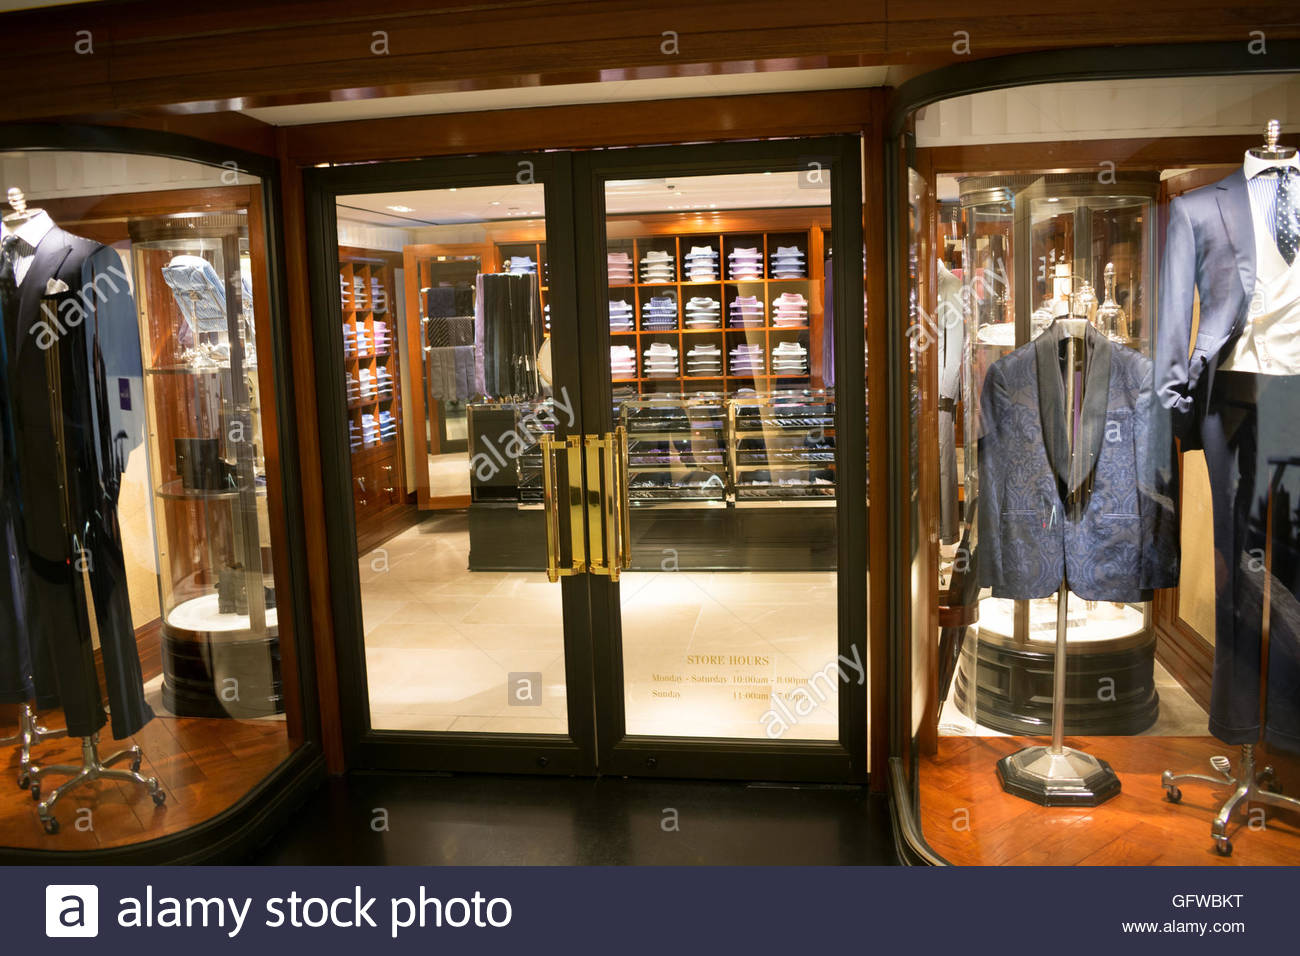 Luxury Clothing Storefront Stock Photo, Royalty Free Image: 113040028 ...